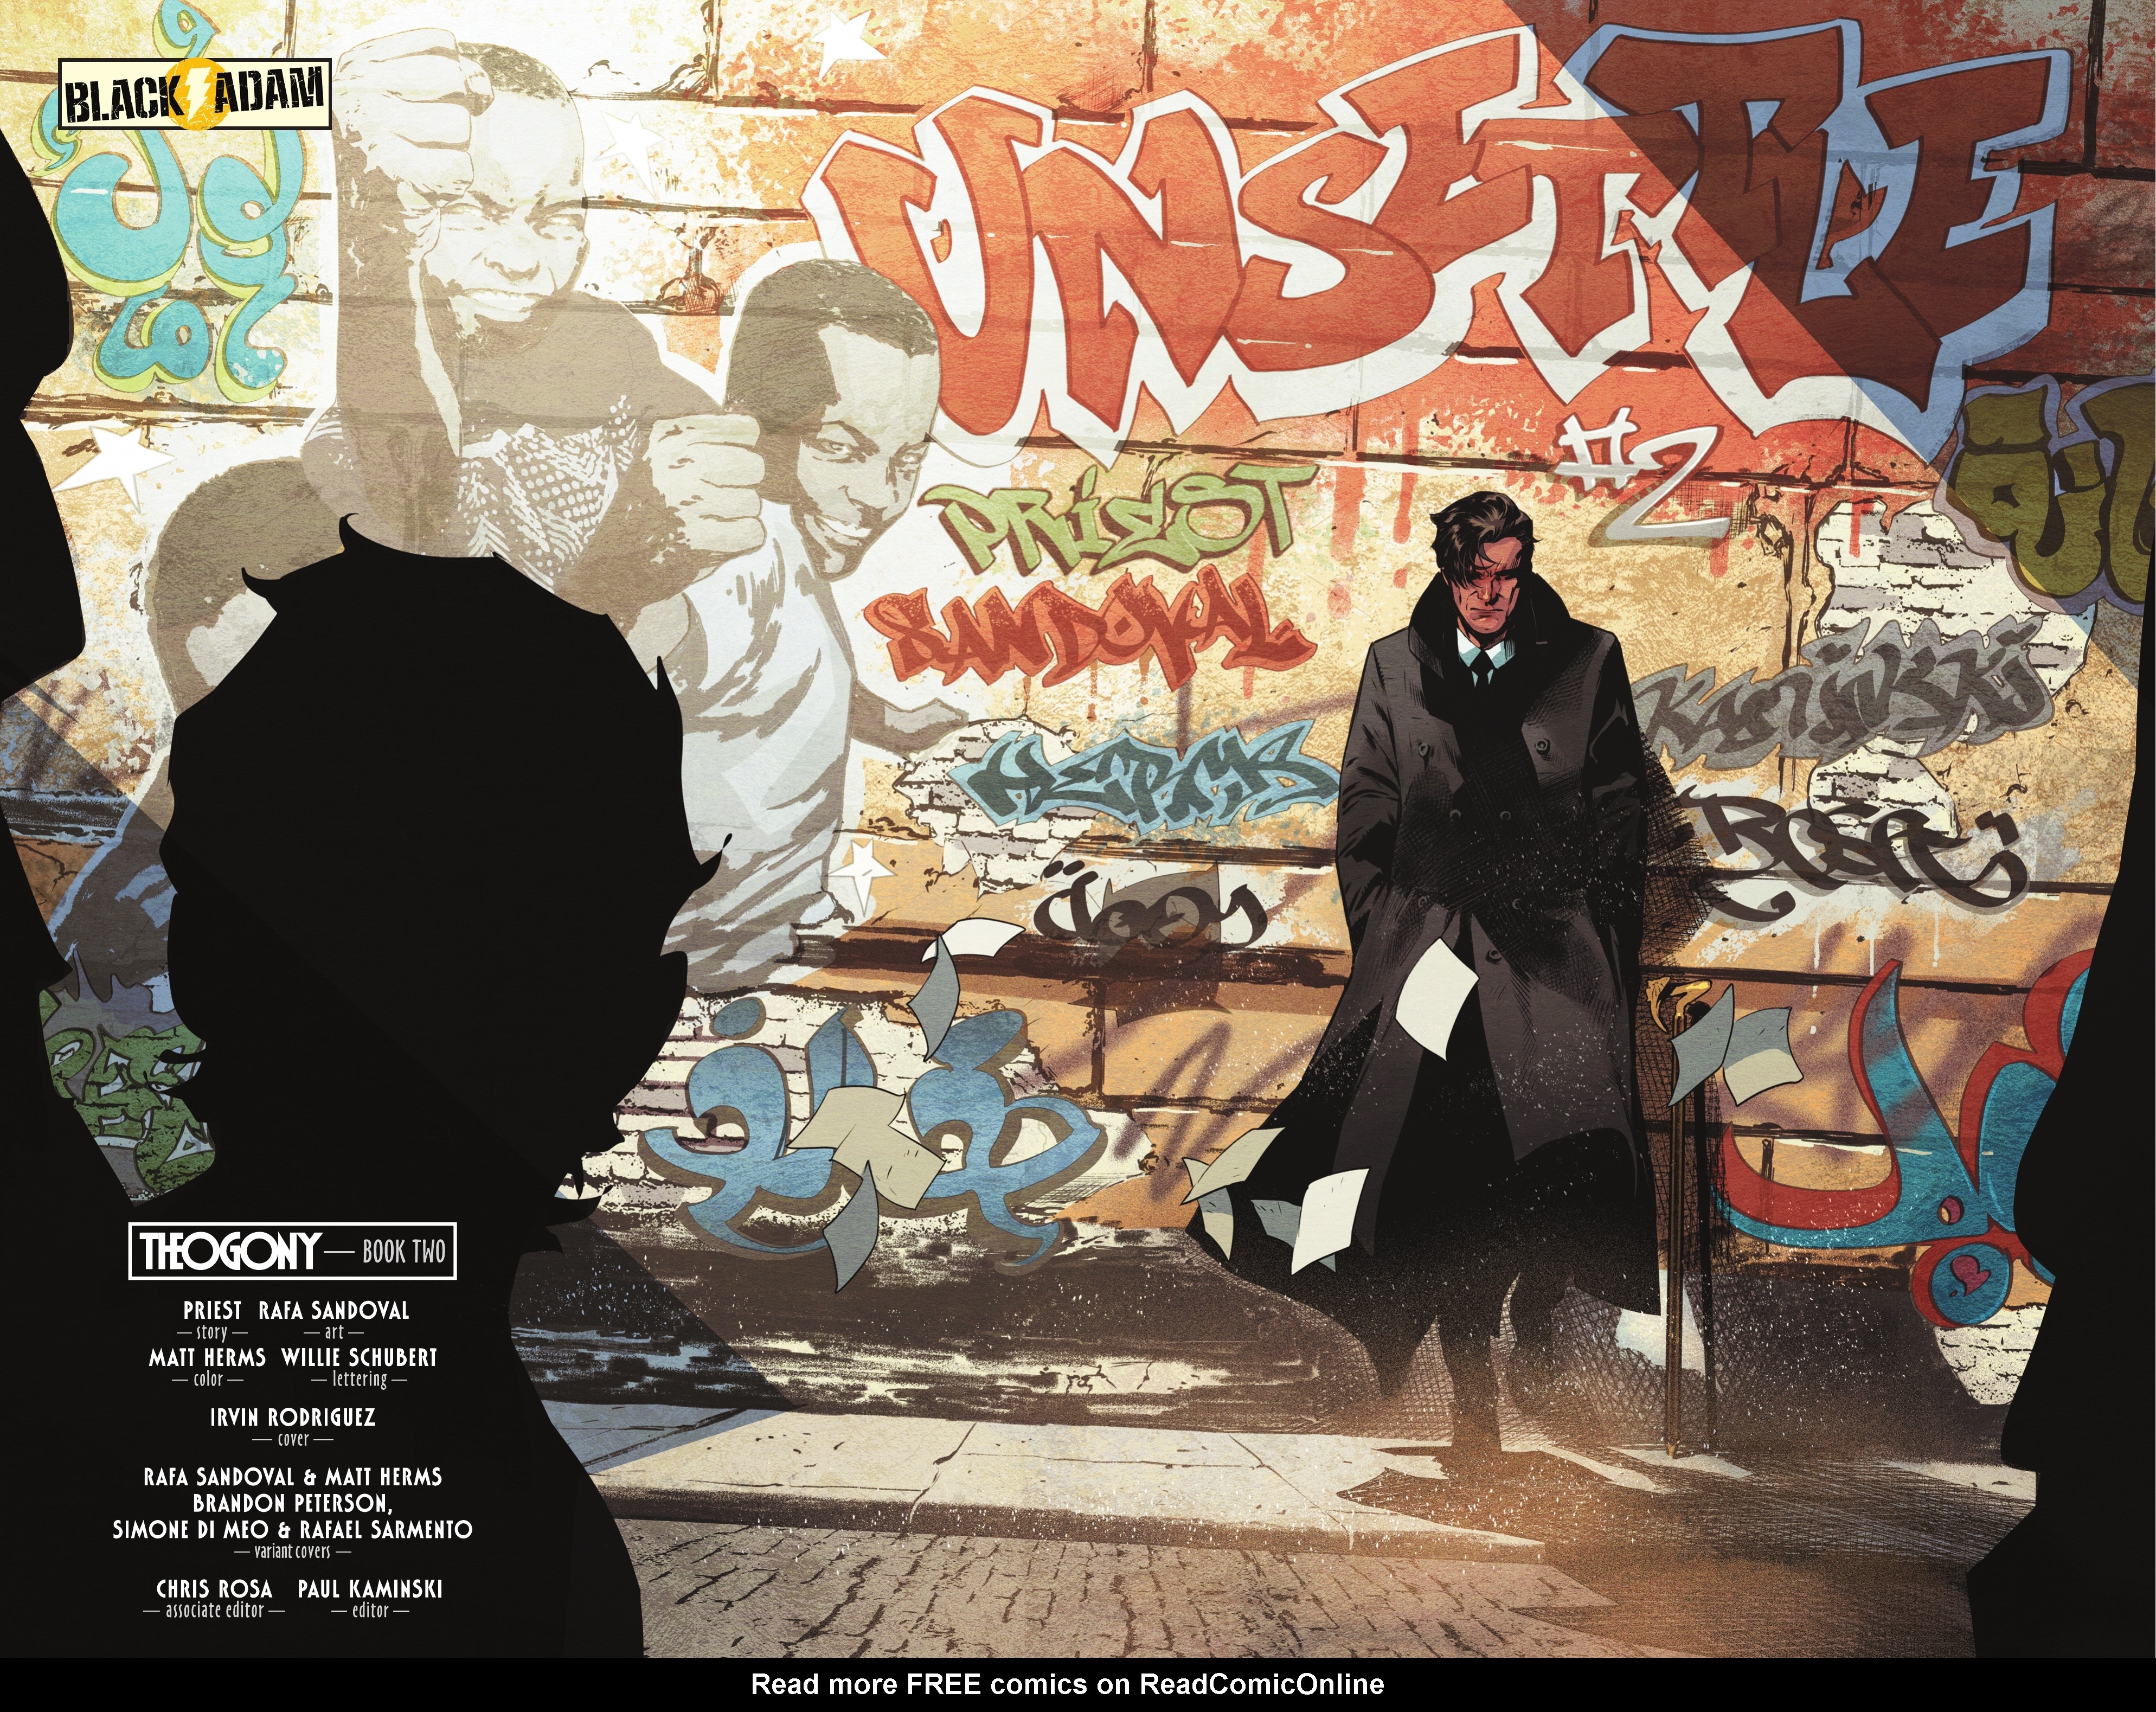 Read online Black Adam comic -  Issue #2 - 4